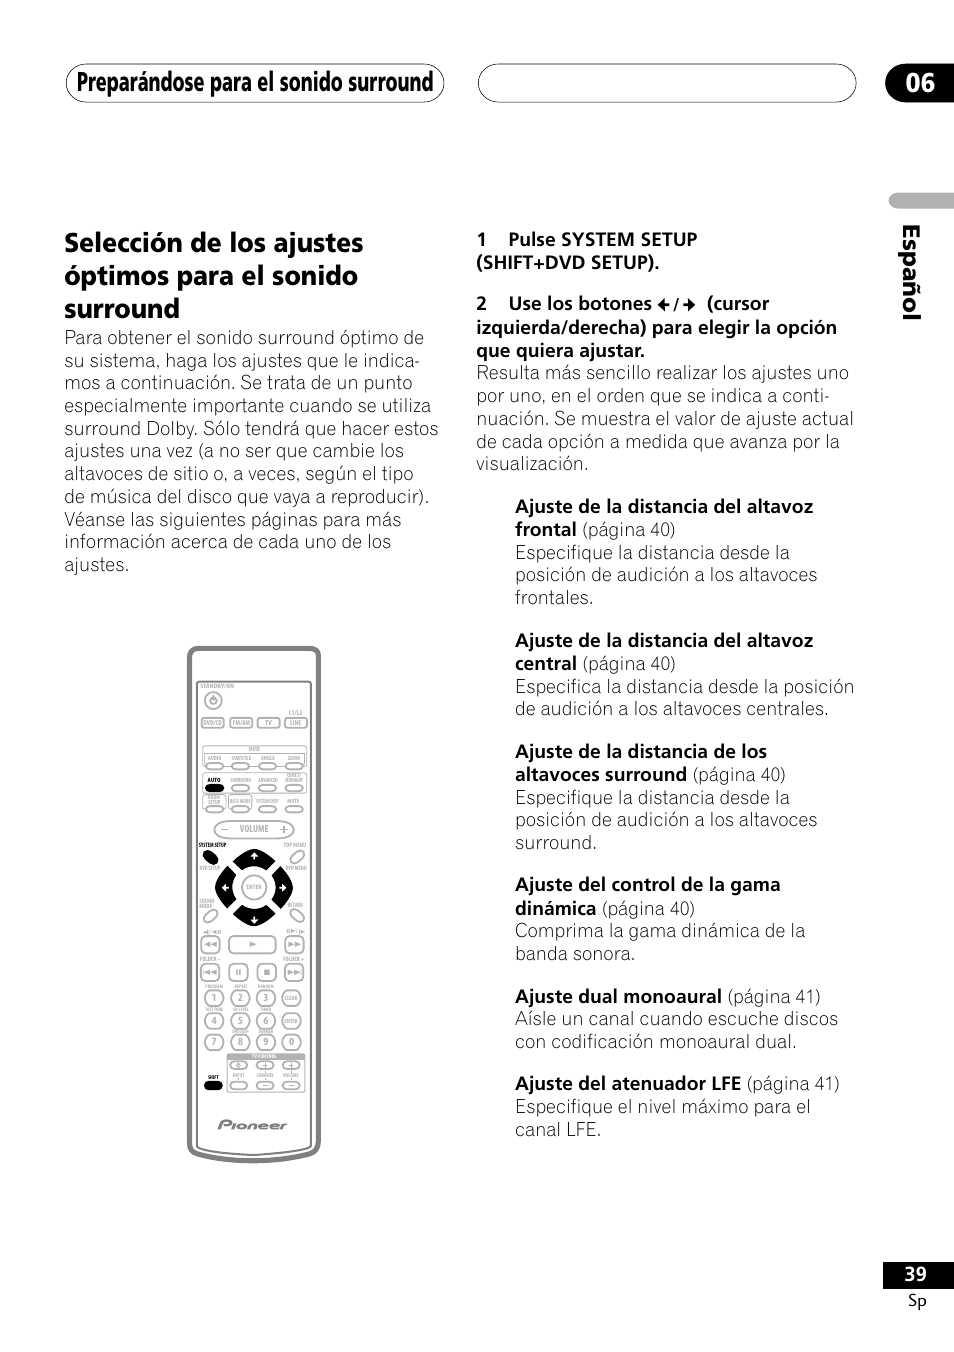 Preparándose para el sonido surround 06, Español | Pioneer DCS-303 User  Manual | Page 39 / 76 | Original mode